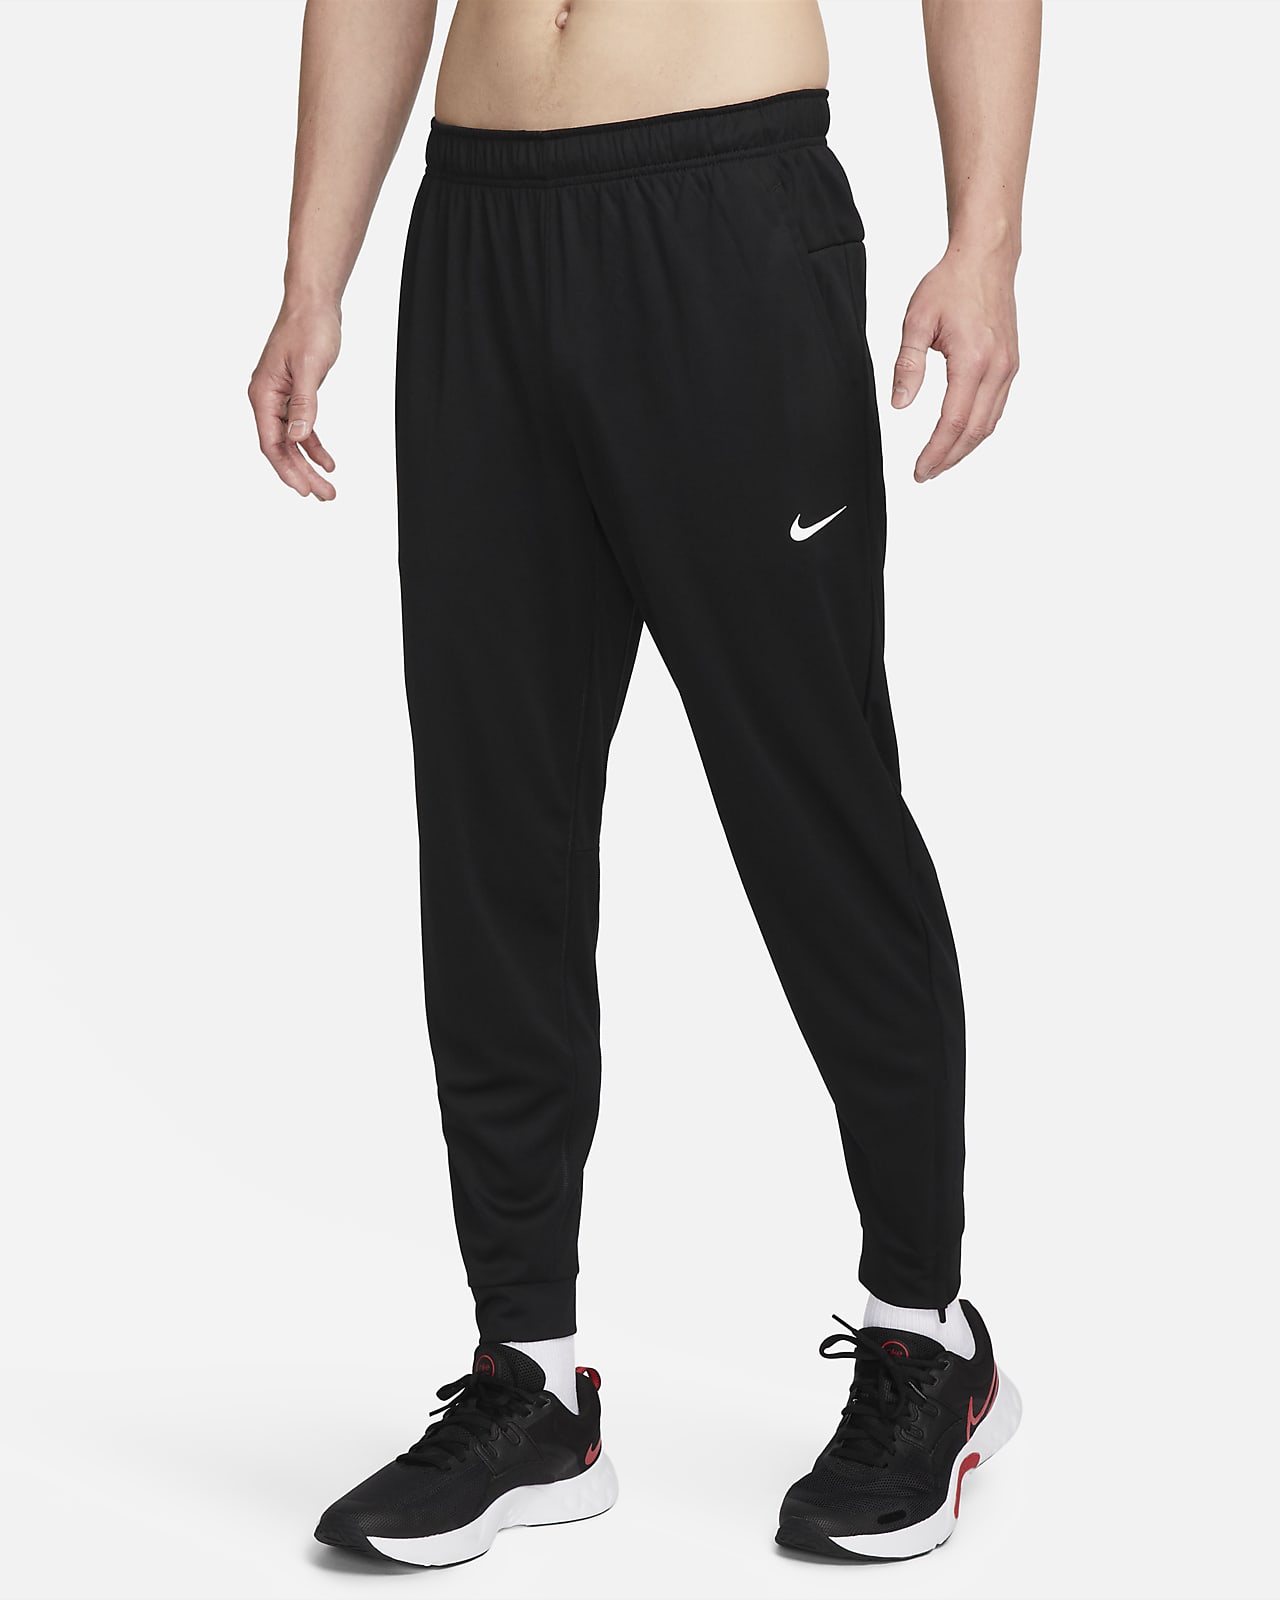 Ανδρικό ευέλικτο παντελόνι Dri-FIT που στενεύει προς τα κάτω Nike Totality